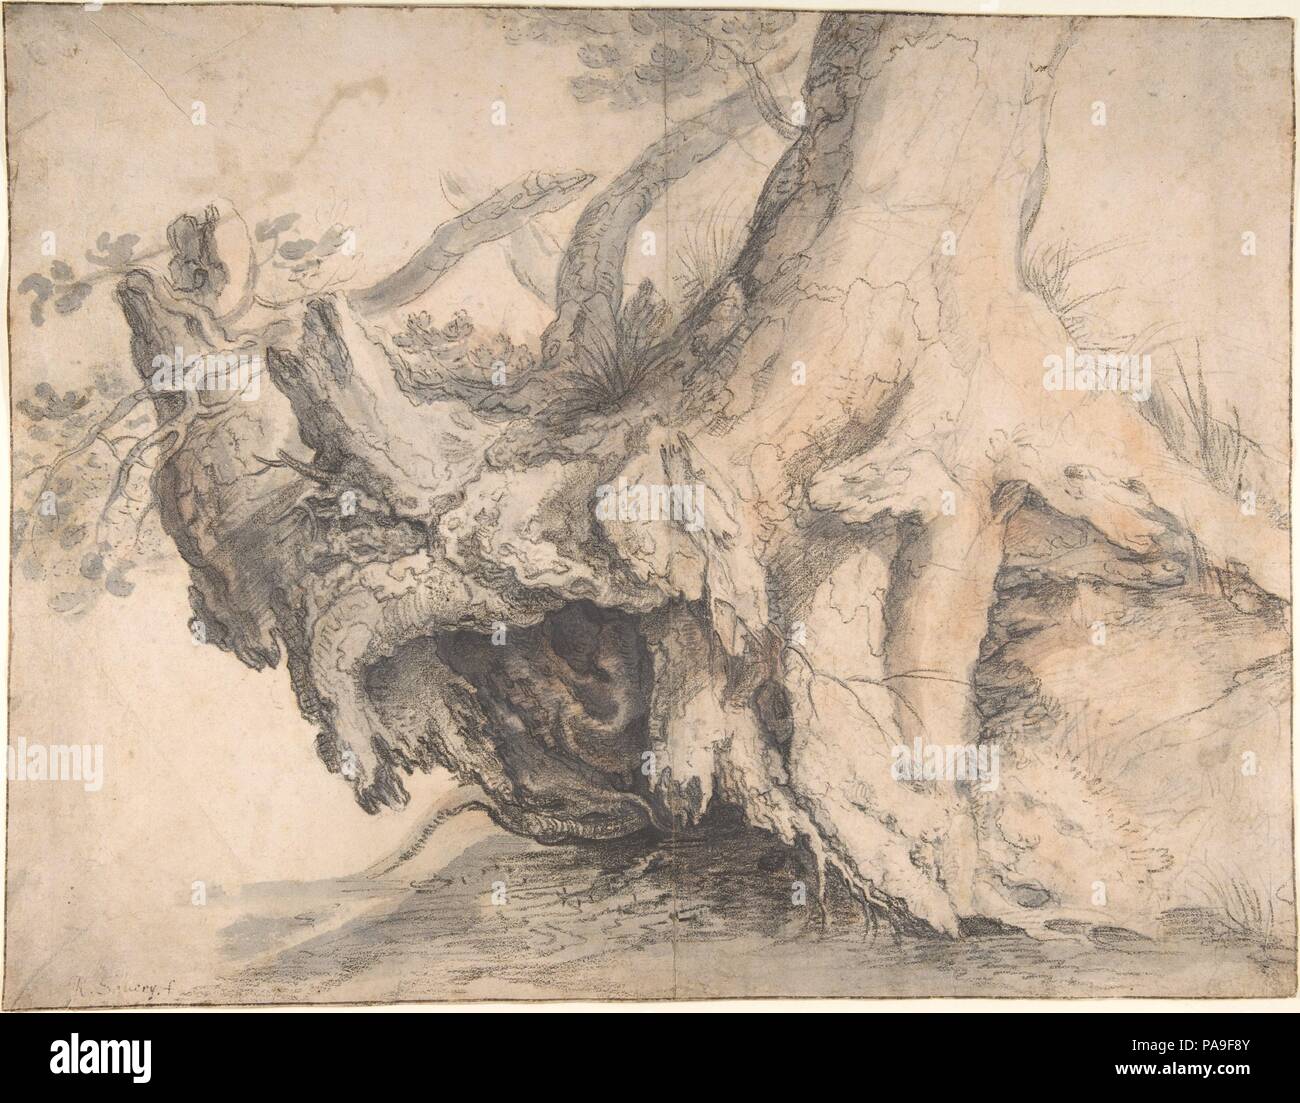 Studio di un albero. Artista: Roelandt Savary (fiammingo, Kortrijk 1576-1639 Utrecht). Dimensioni: 12-1/16 x 15-1/2 in. (30,6 x 39,4 cm). Data: ca. 1606-7. Entrambi morti e viva e un potente, sradicati tronco di albero, insieme con un groviglio di monconi, radici e rami, è l'unico oggetto di questo disegno. Savary, come molti altri artisti Netherlandish intorno al 1600, era affascinato da tale altamente caricato le animazioni delle forme naturali. Savary potrebbe avere incontrato questo albero durante il suo lungo viaggio verso la Svizzera e Alpi tirolesi, dal 1606 al 1608, su cui ha rispettato l'ordine del Sacro Romano Imperatore Ru Foto Stock